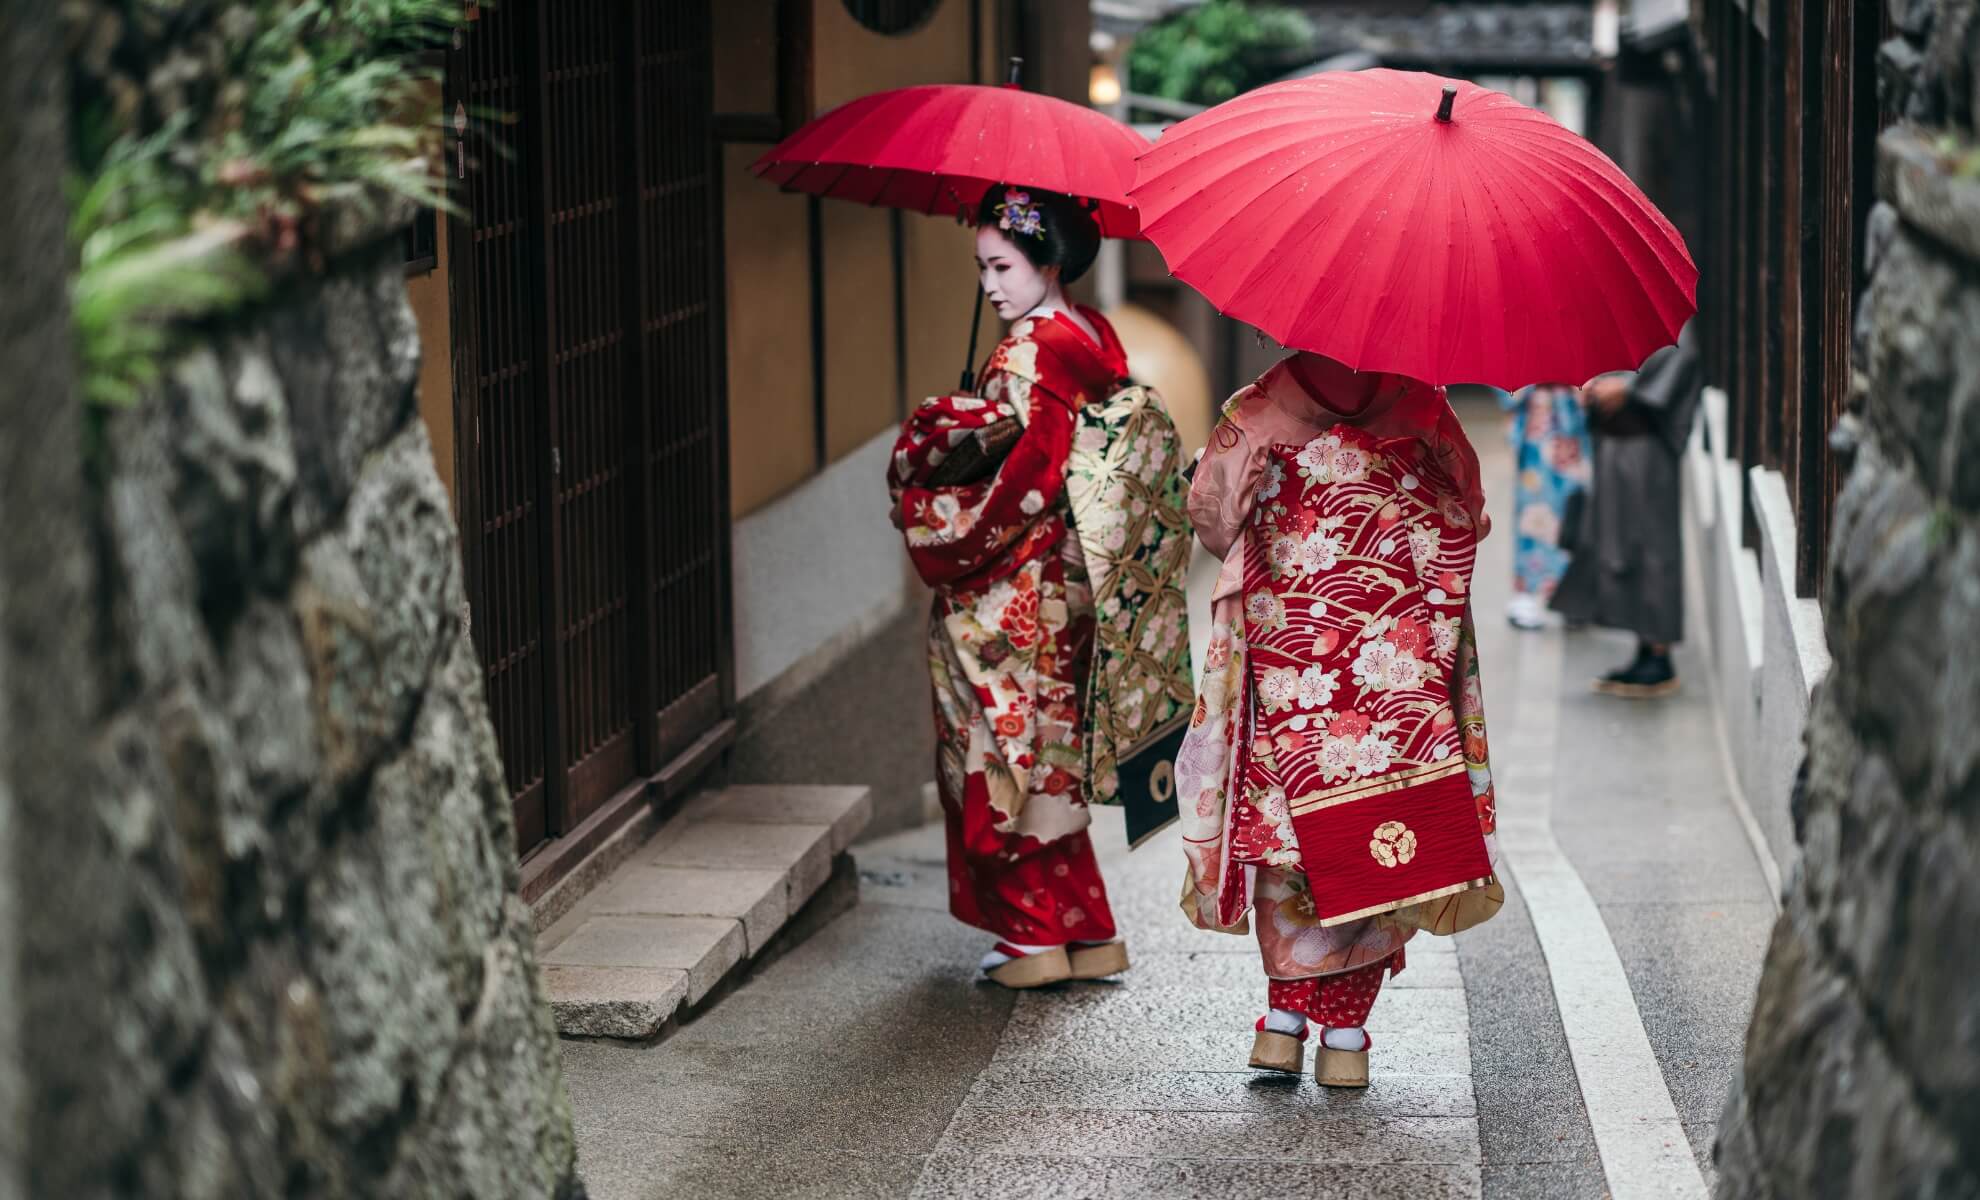 Des maiko geishas dans les ruelles du quartier de Gion, Kyoto au Japon